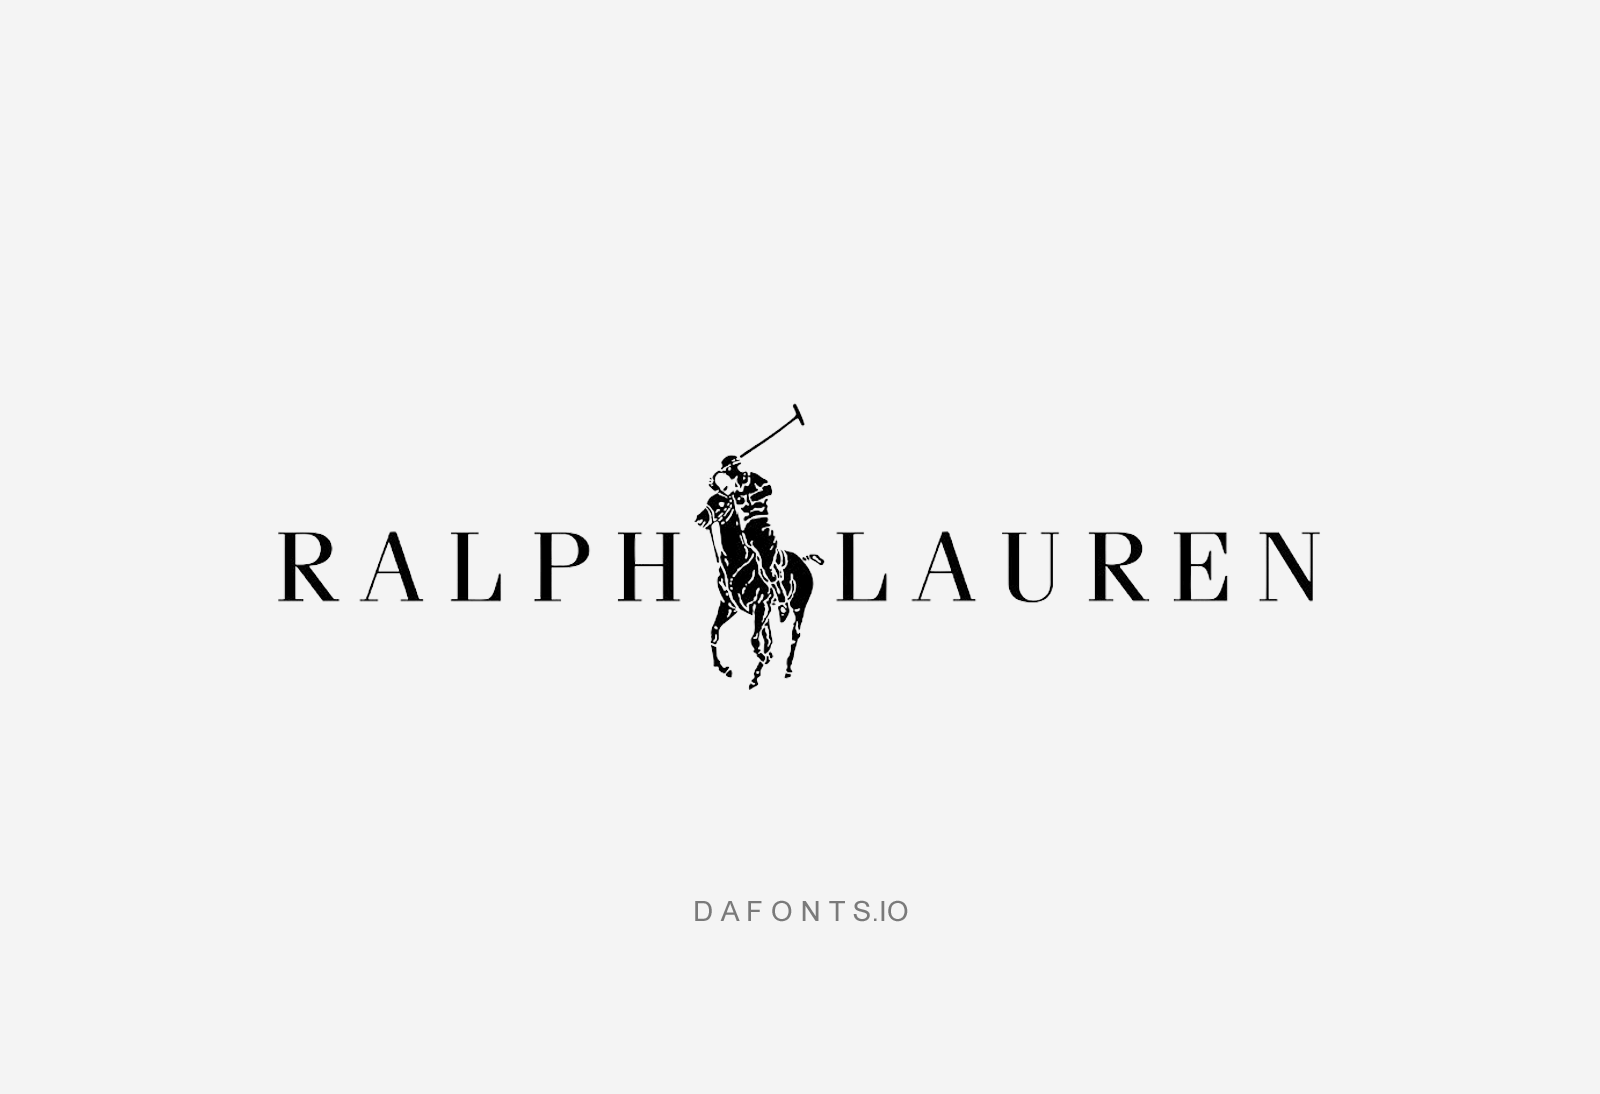 Ralph Lauren Font